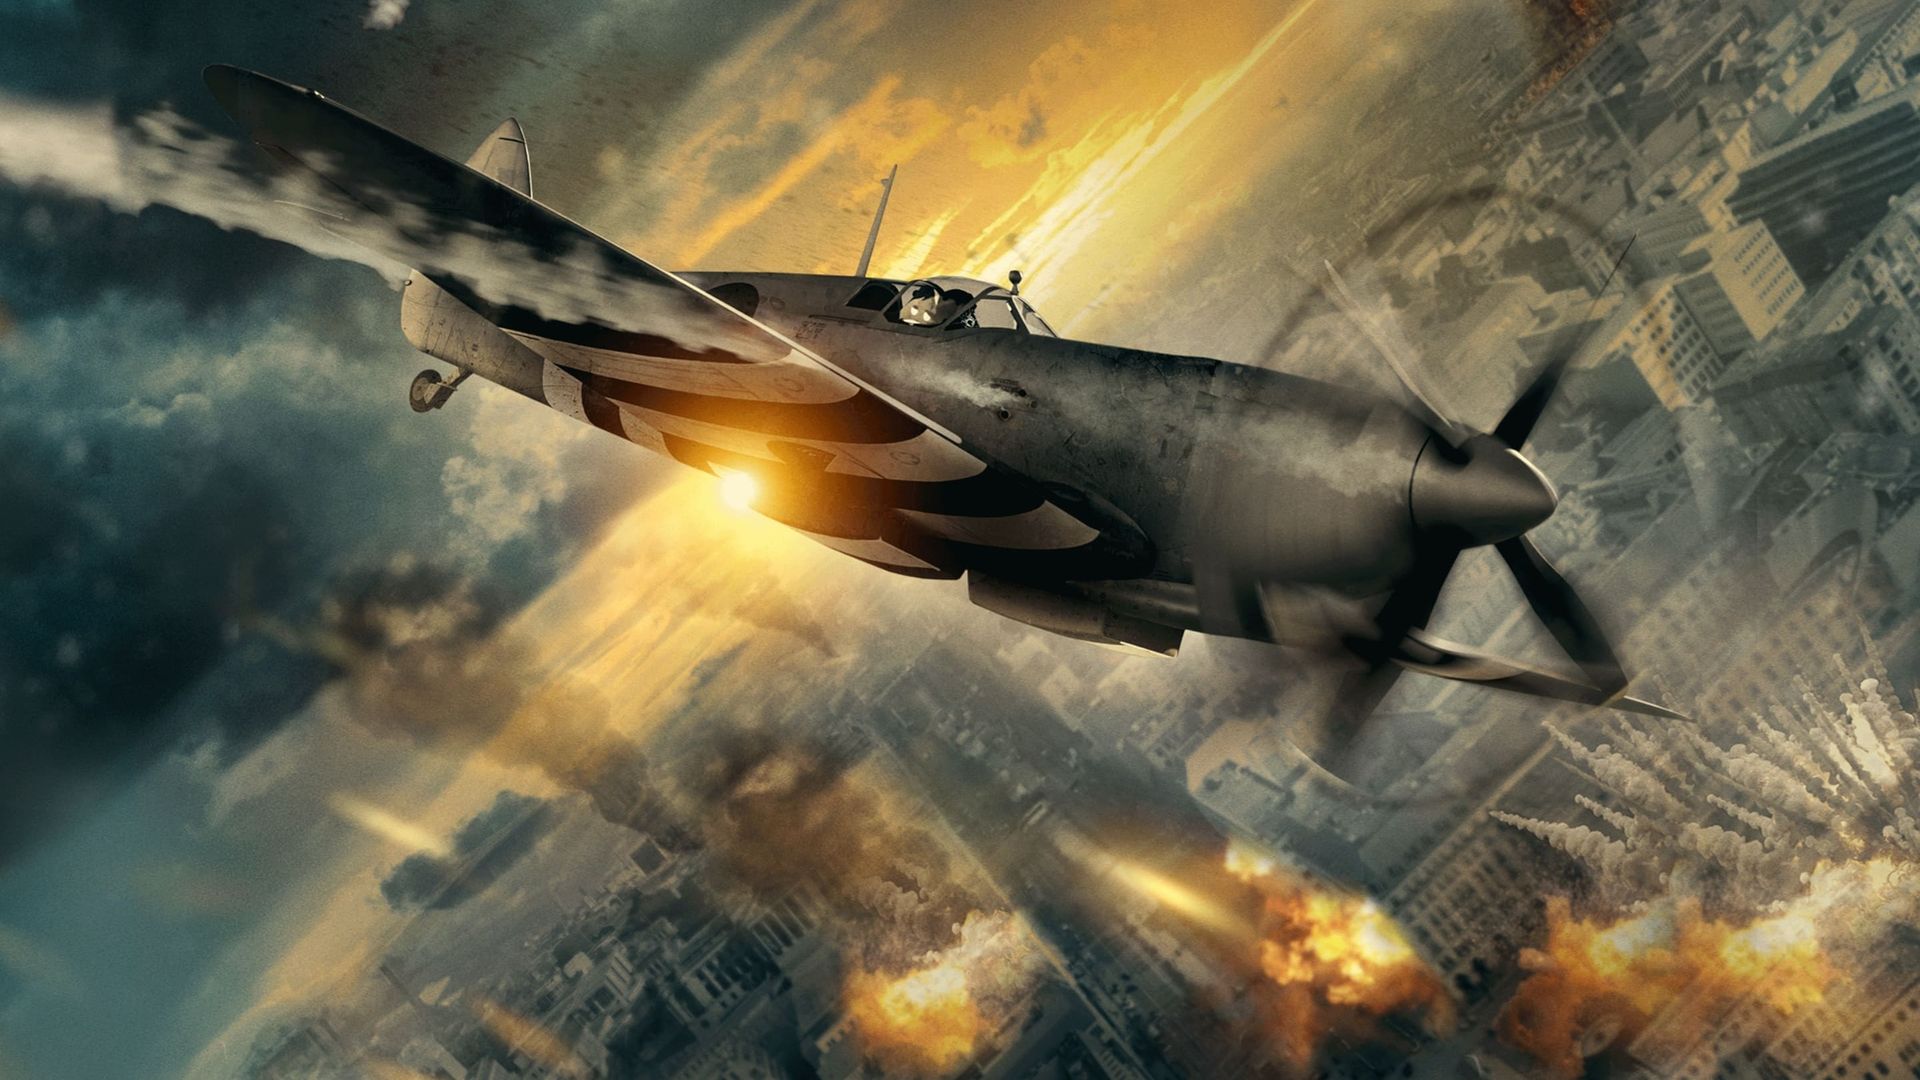 Spitfire Over Berlin background